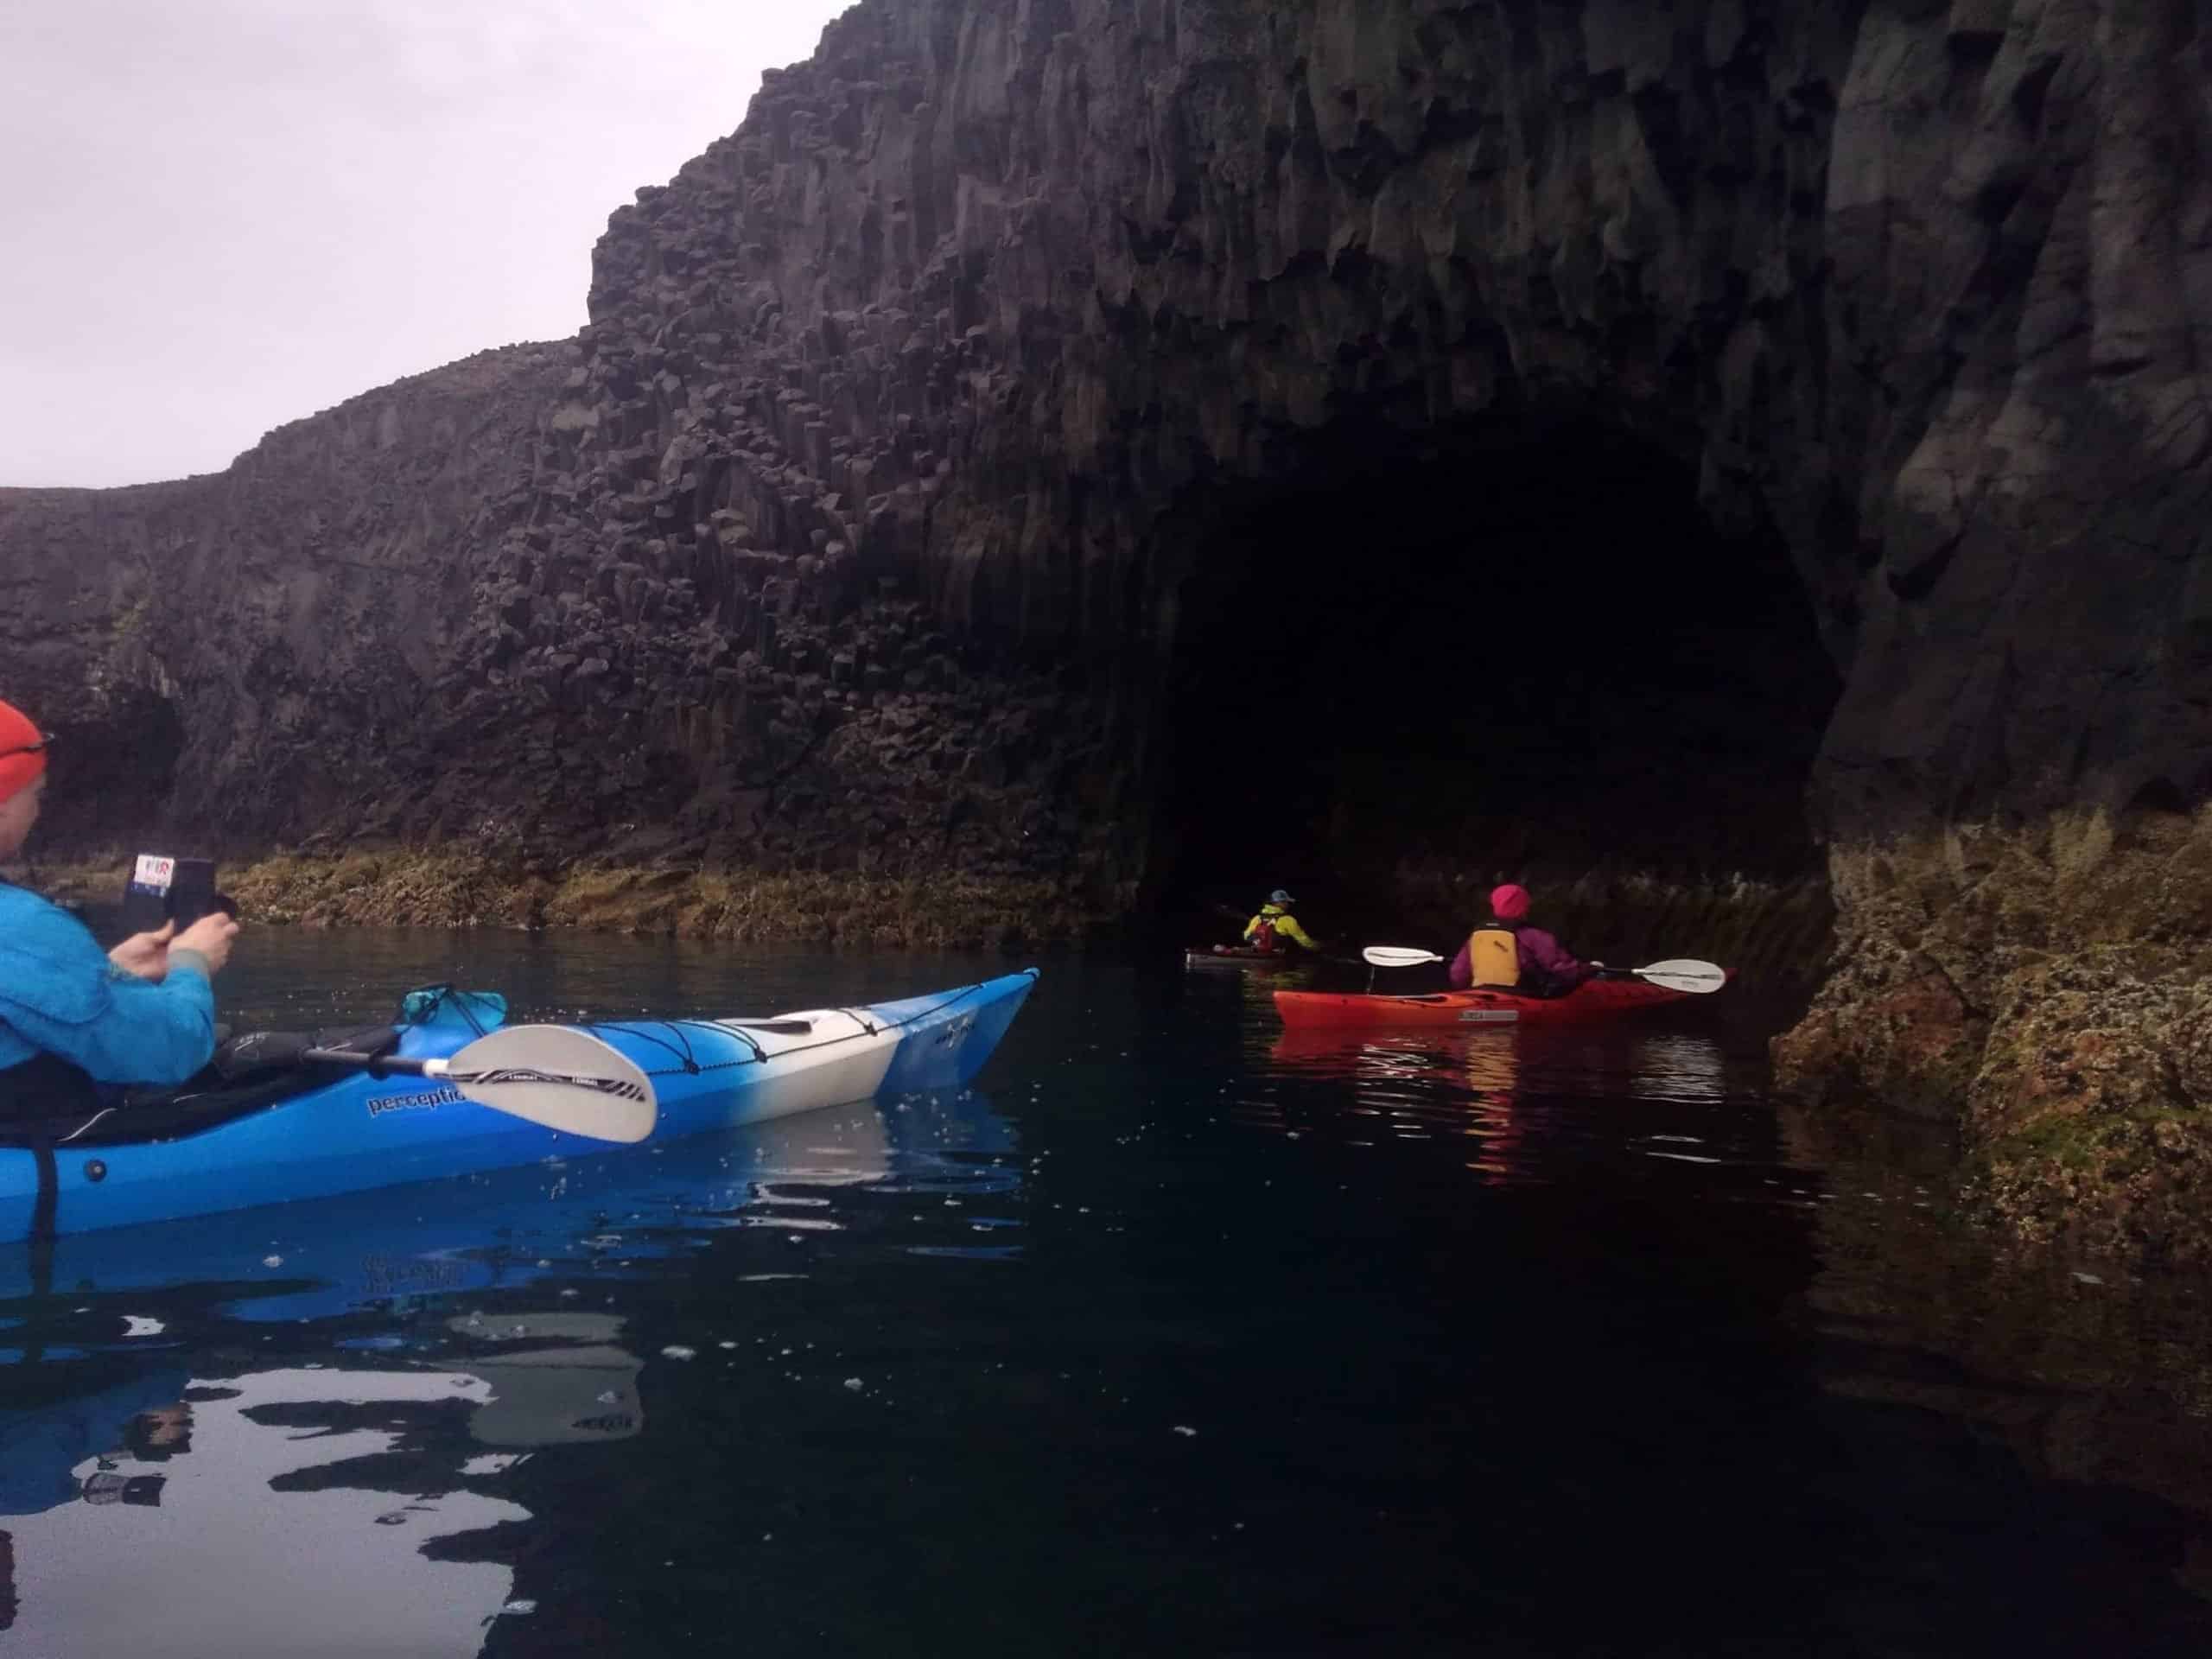 Des kayakistes naviguant dans une grotte au nord de l'Islande.